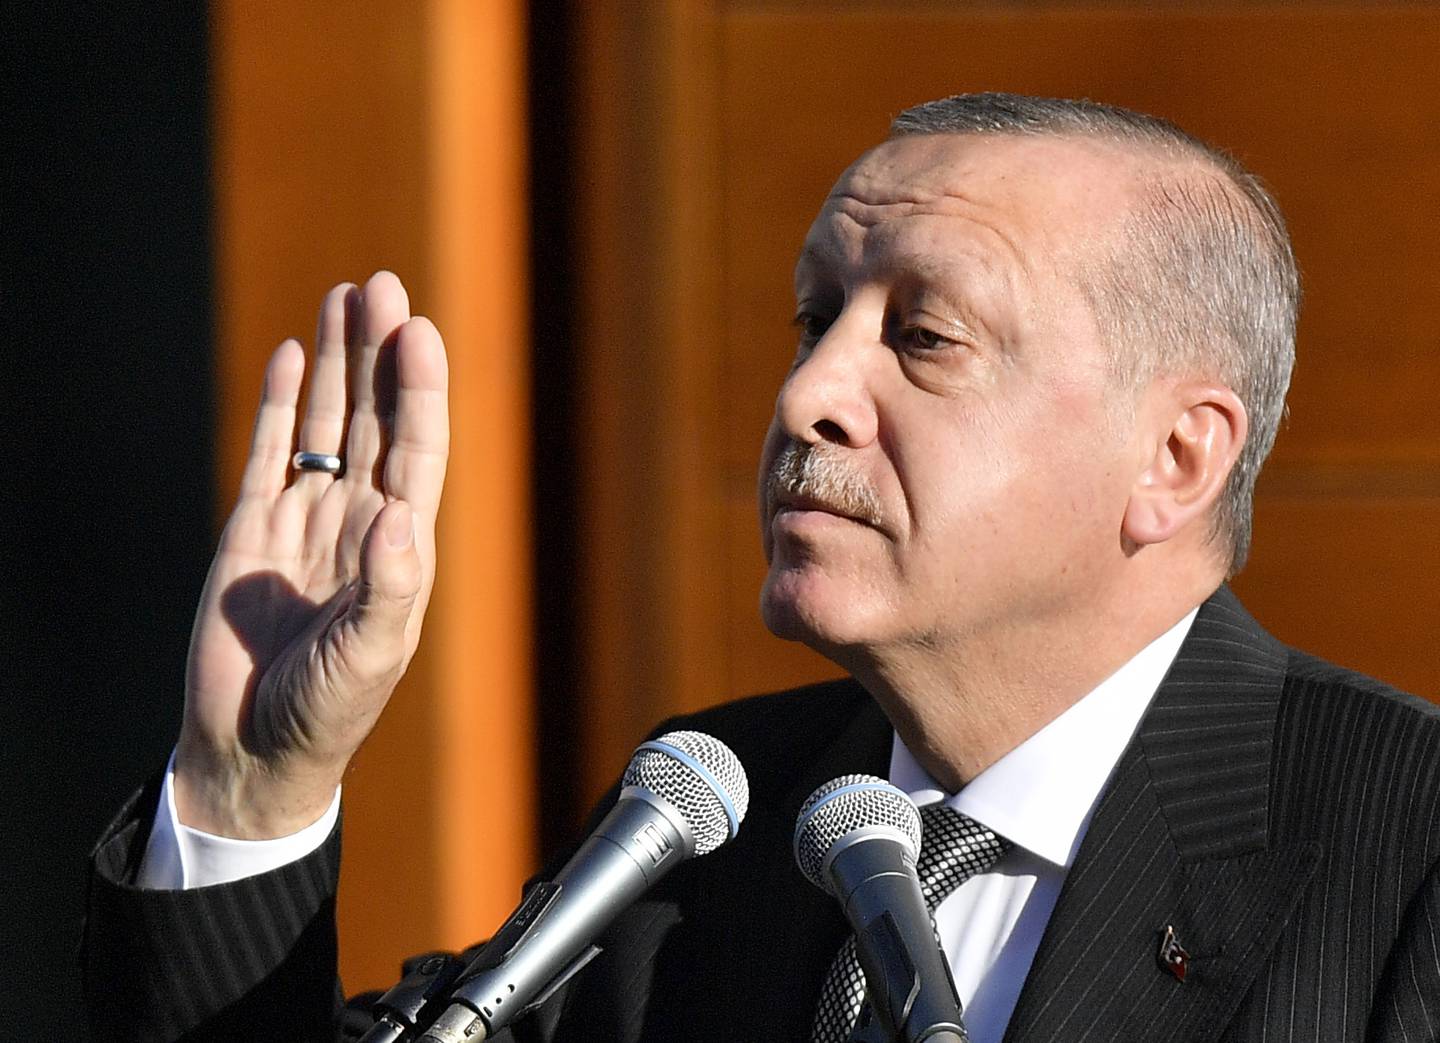 KONTROVERSER: DITIB-moskeen ble innviet av Tyrkias president Recep Tayyip Erdogan i september 2018. Erdogans besøk skal ha vært kontroversielt.